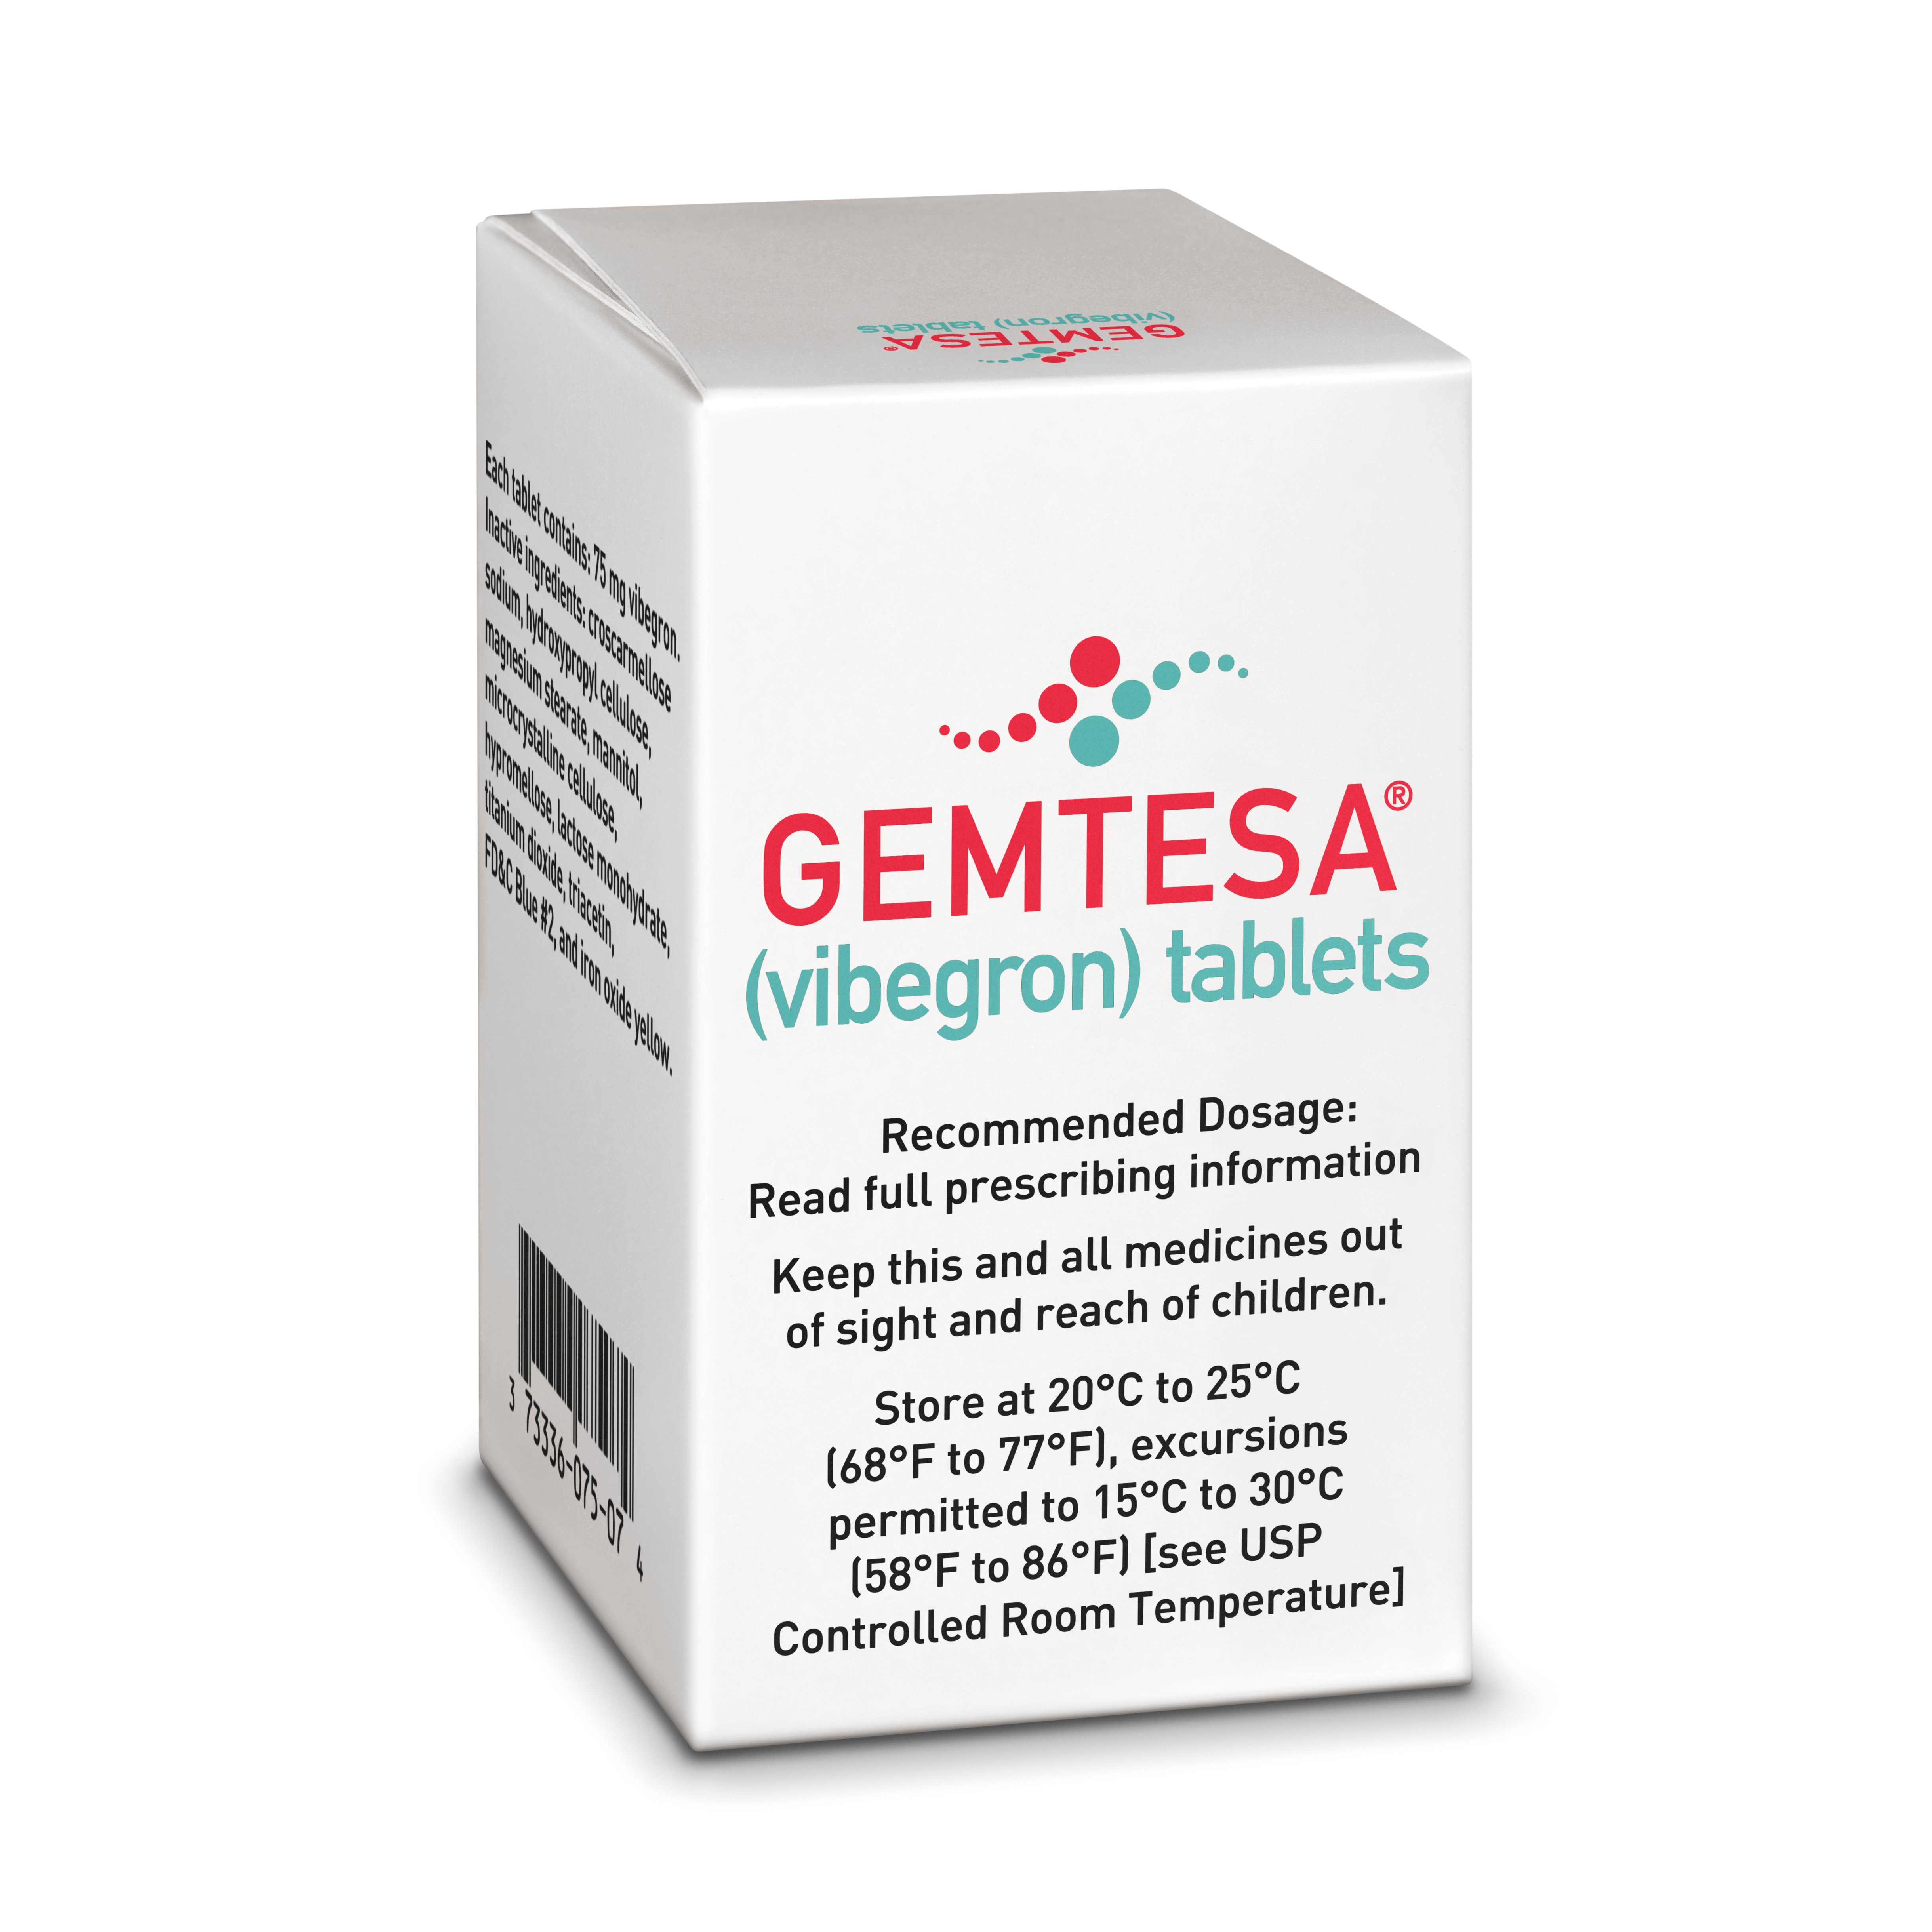 Urovant Sciences overactive bladder med Gemtesa product shot